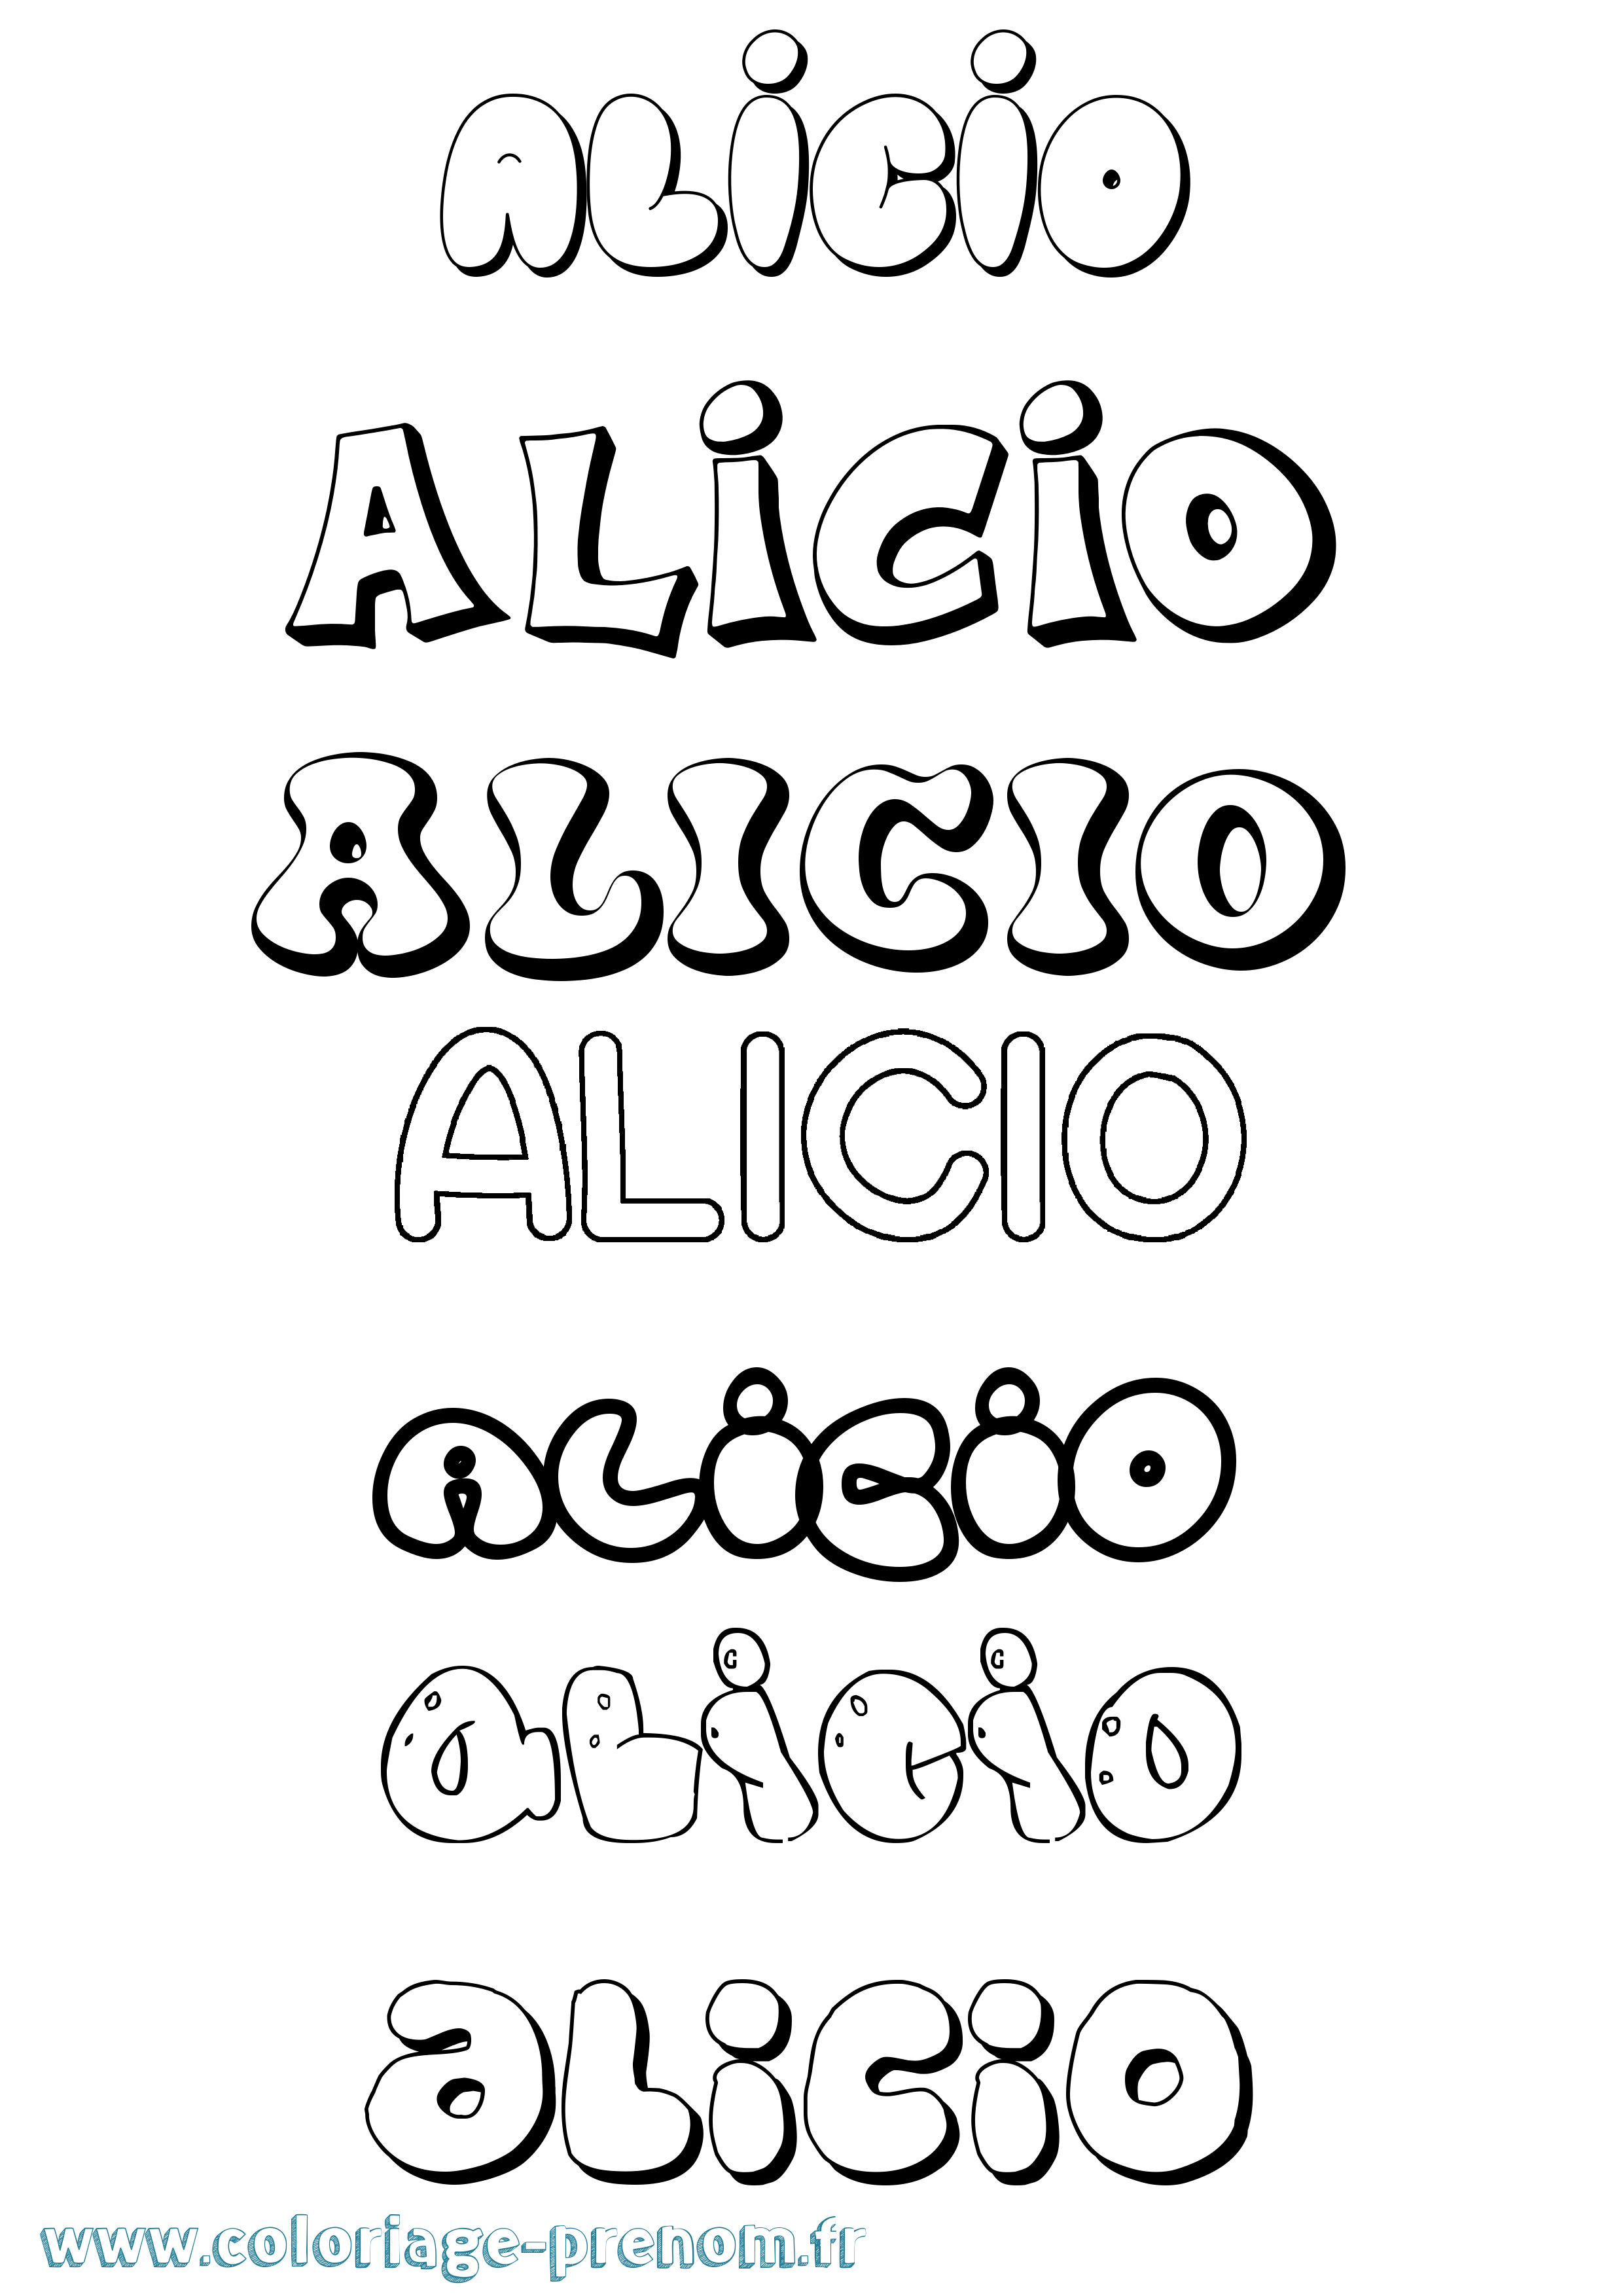 Coloriage prénom Alicio Bubble